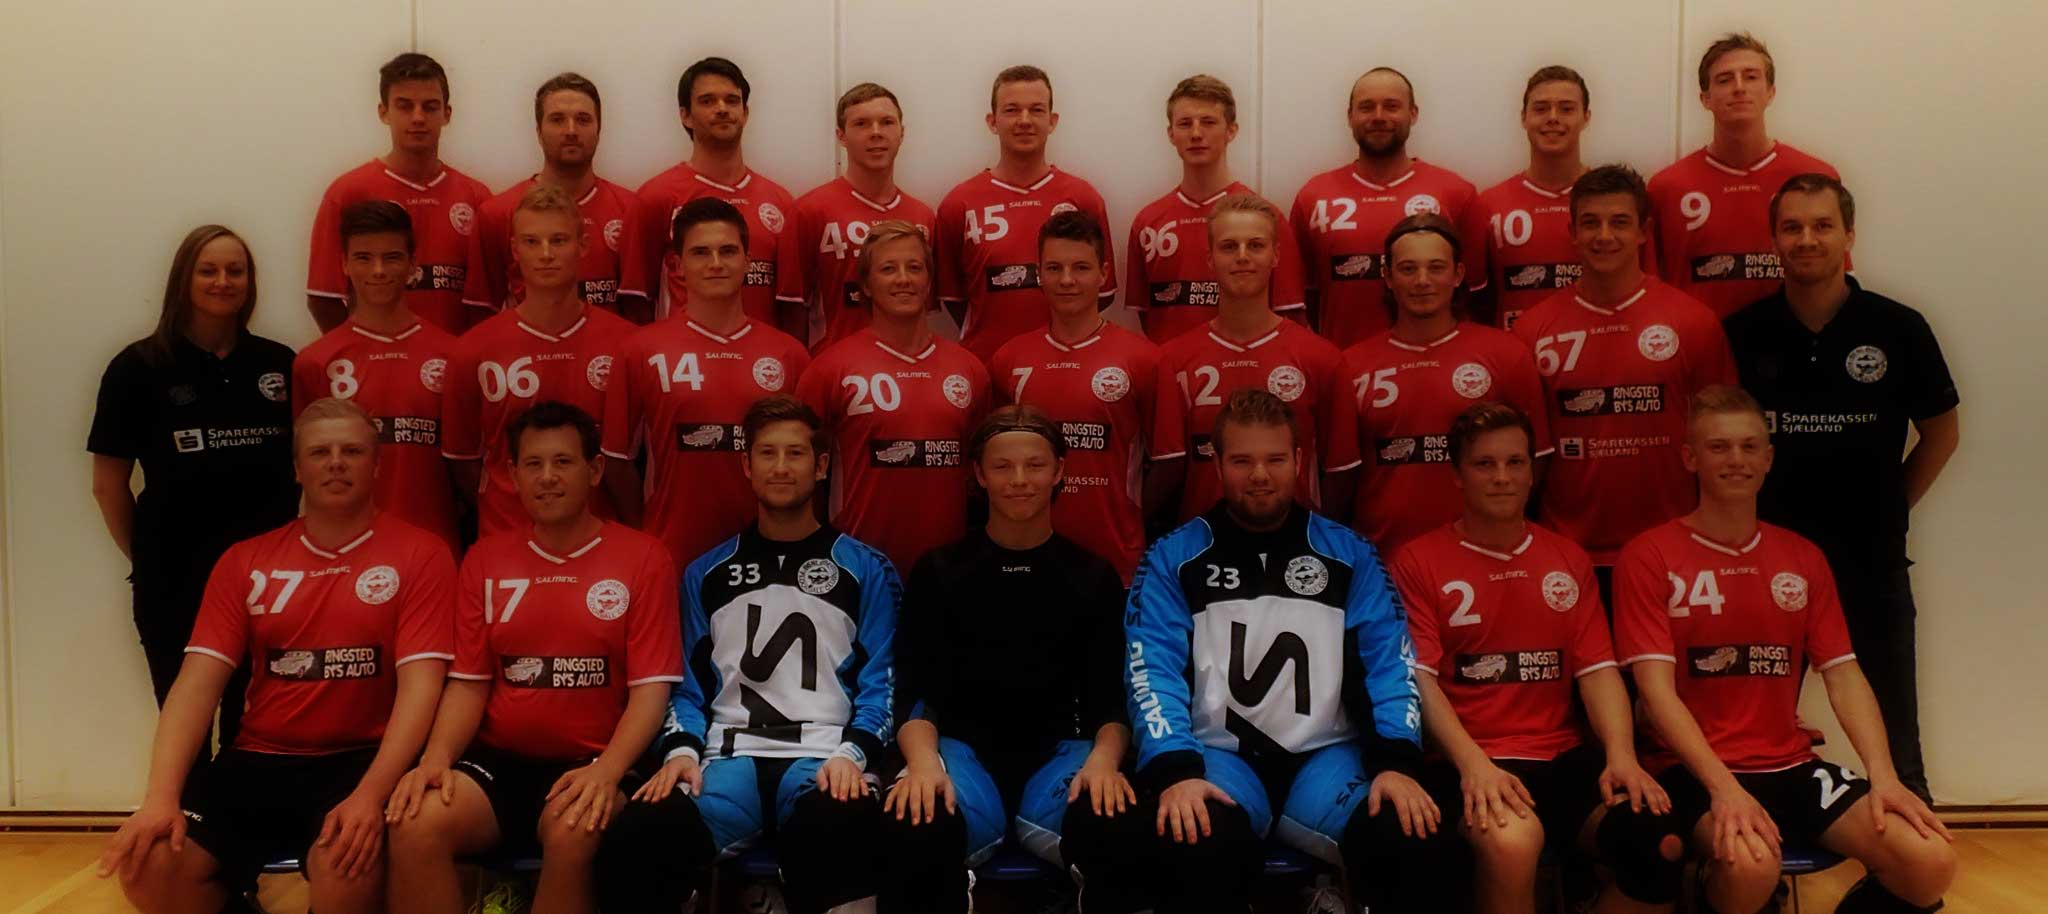 Benløse Floorball Club - Liga herrer - Sæson 2012-2013